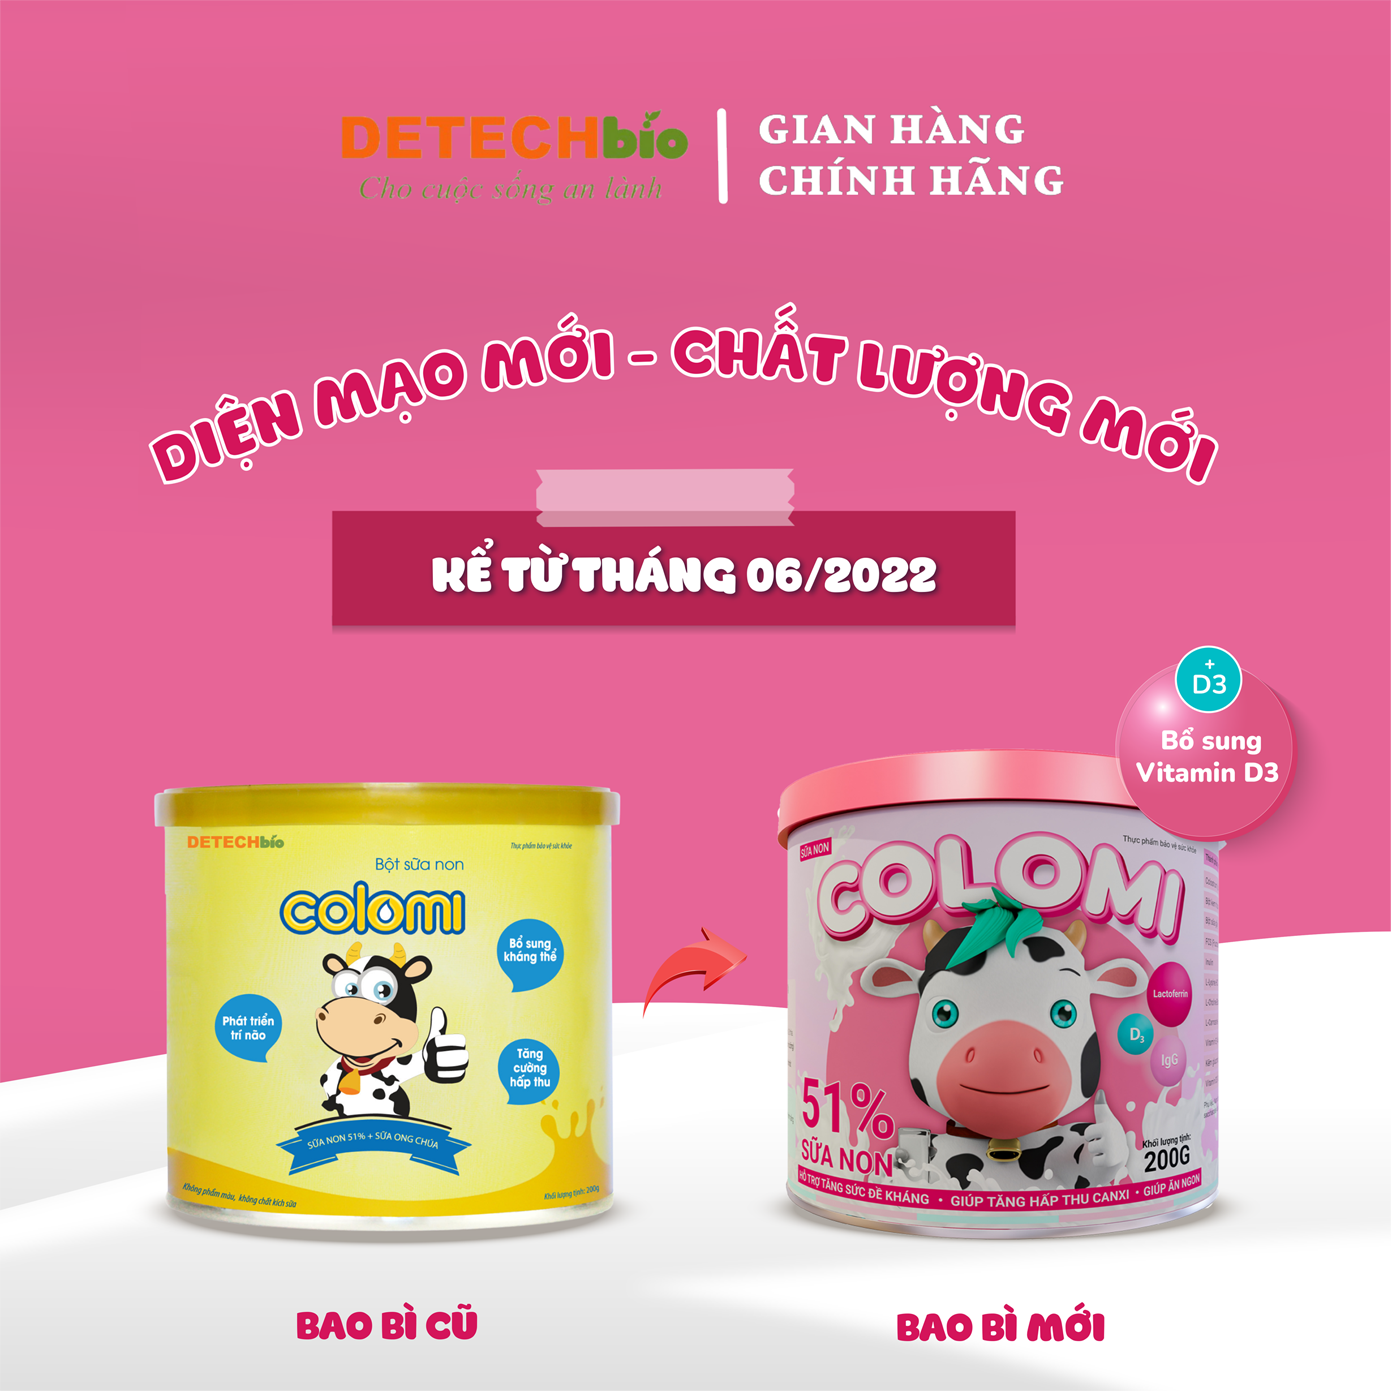 Sữa non COLOMI 200g dành cho trẻ em